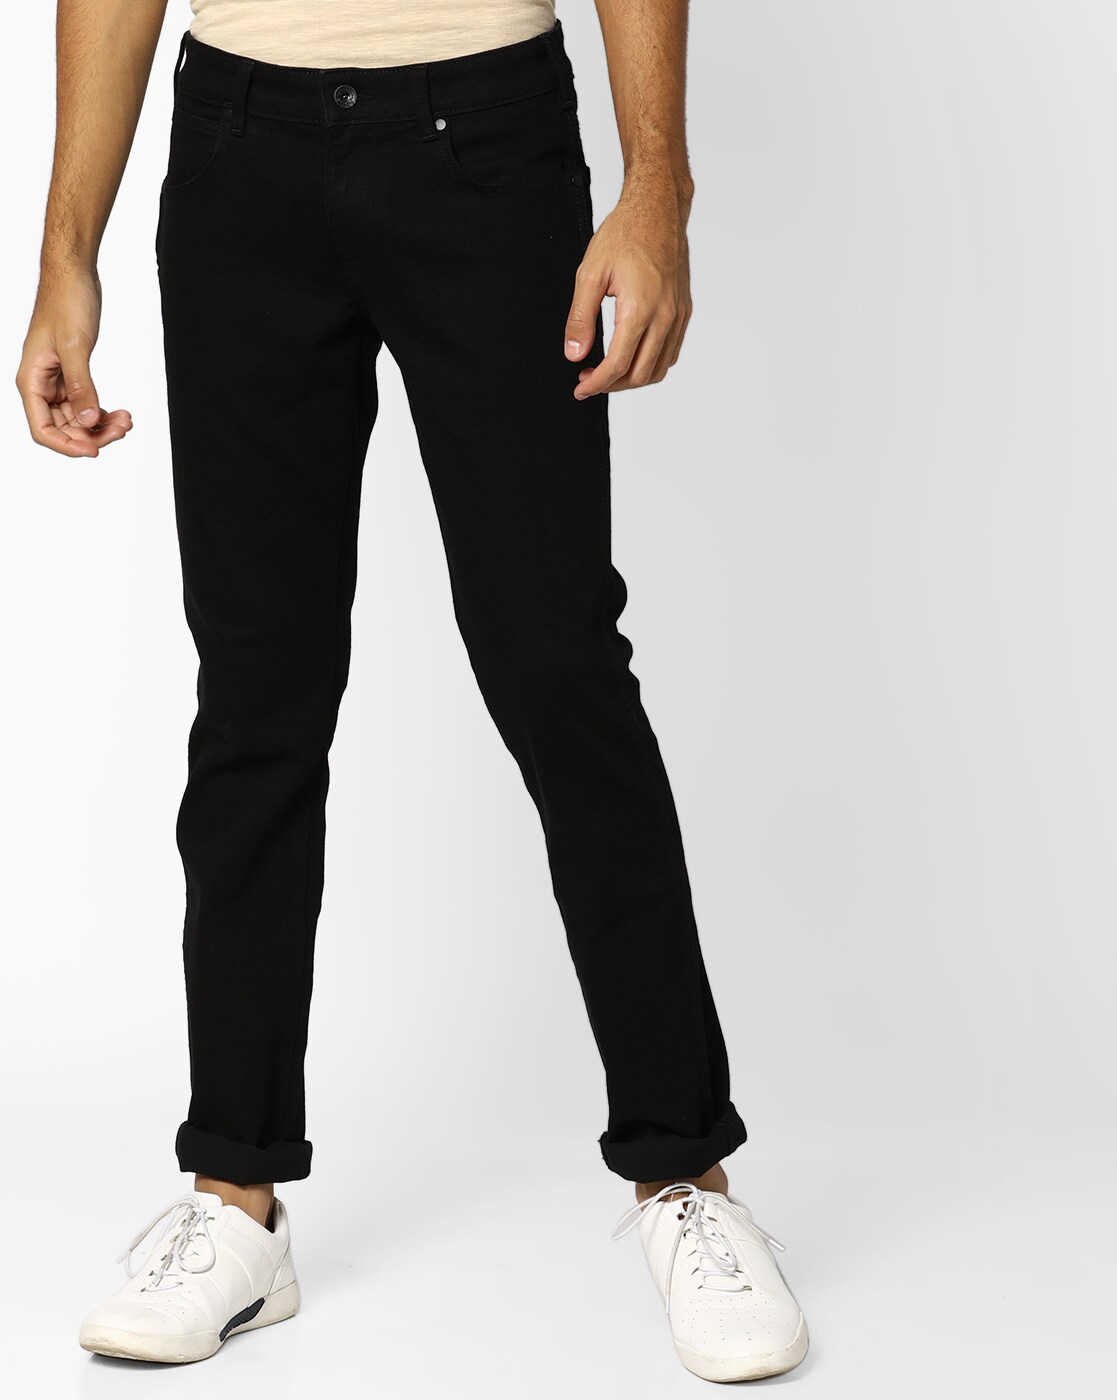 wrangler jeans online shop